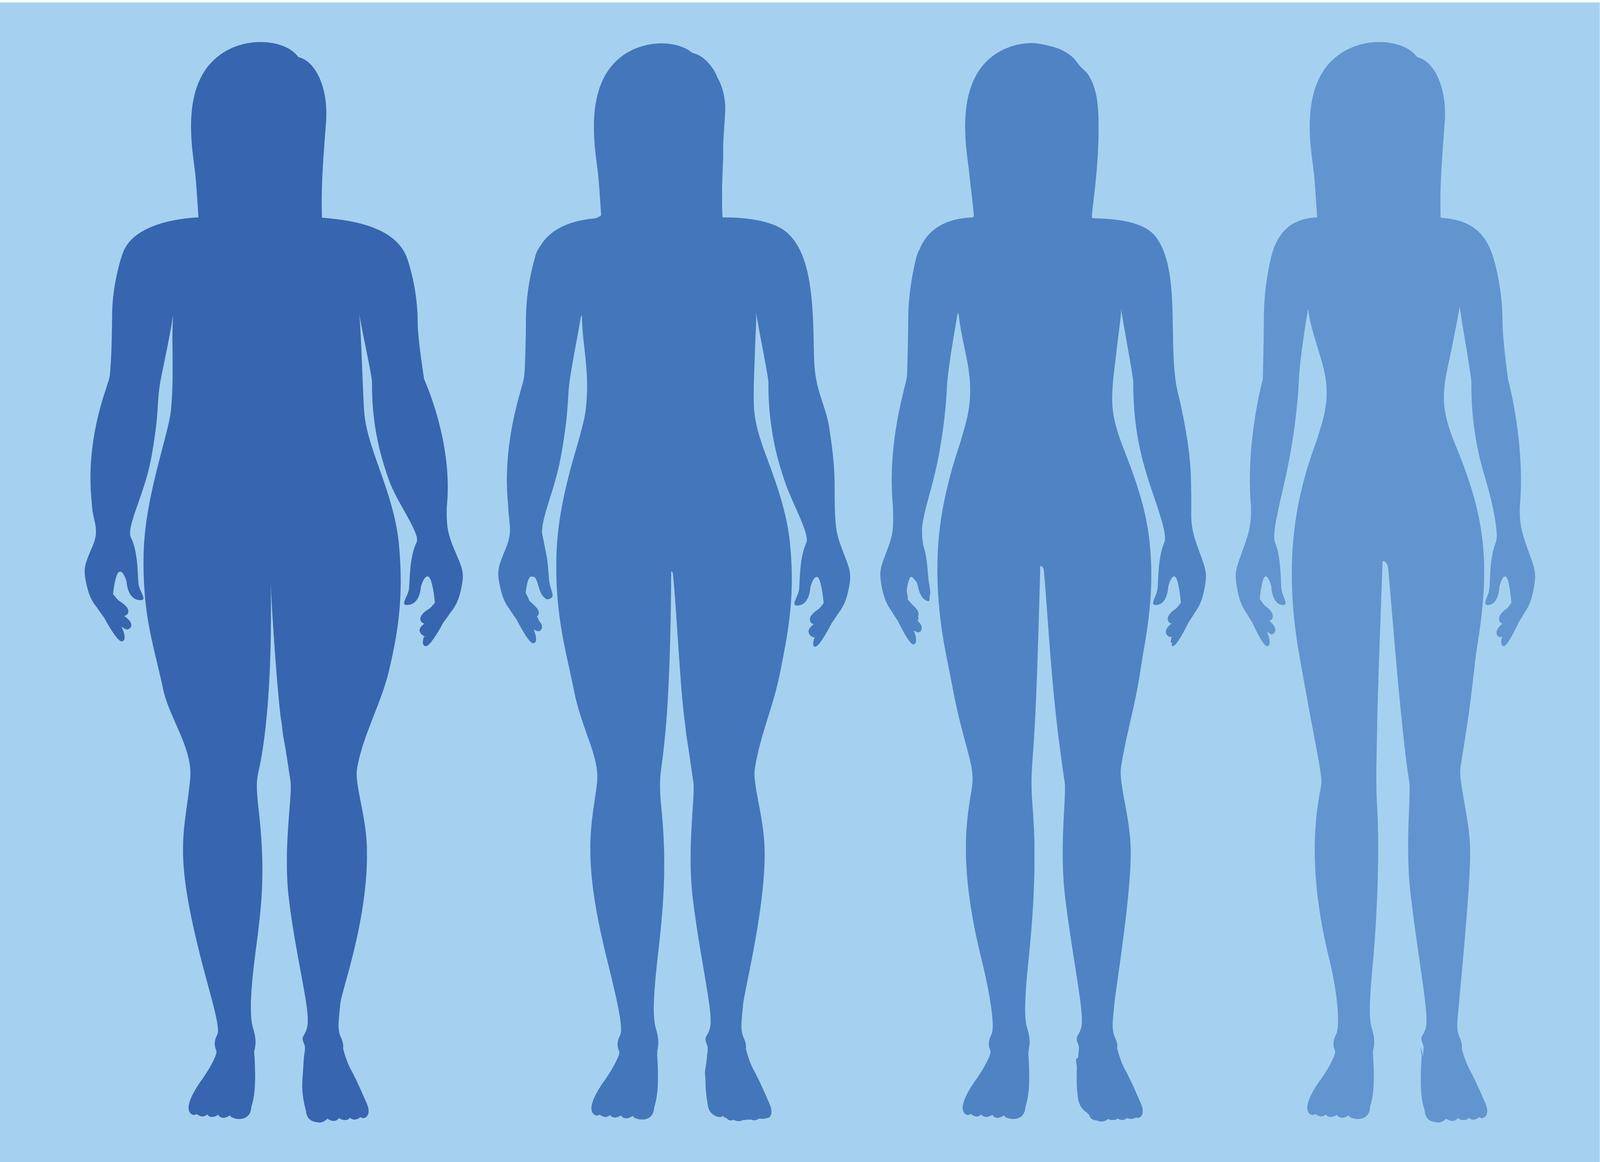 Female body obese to skinny illustration